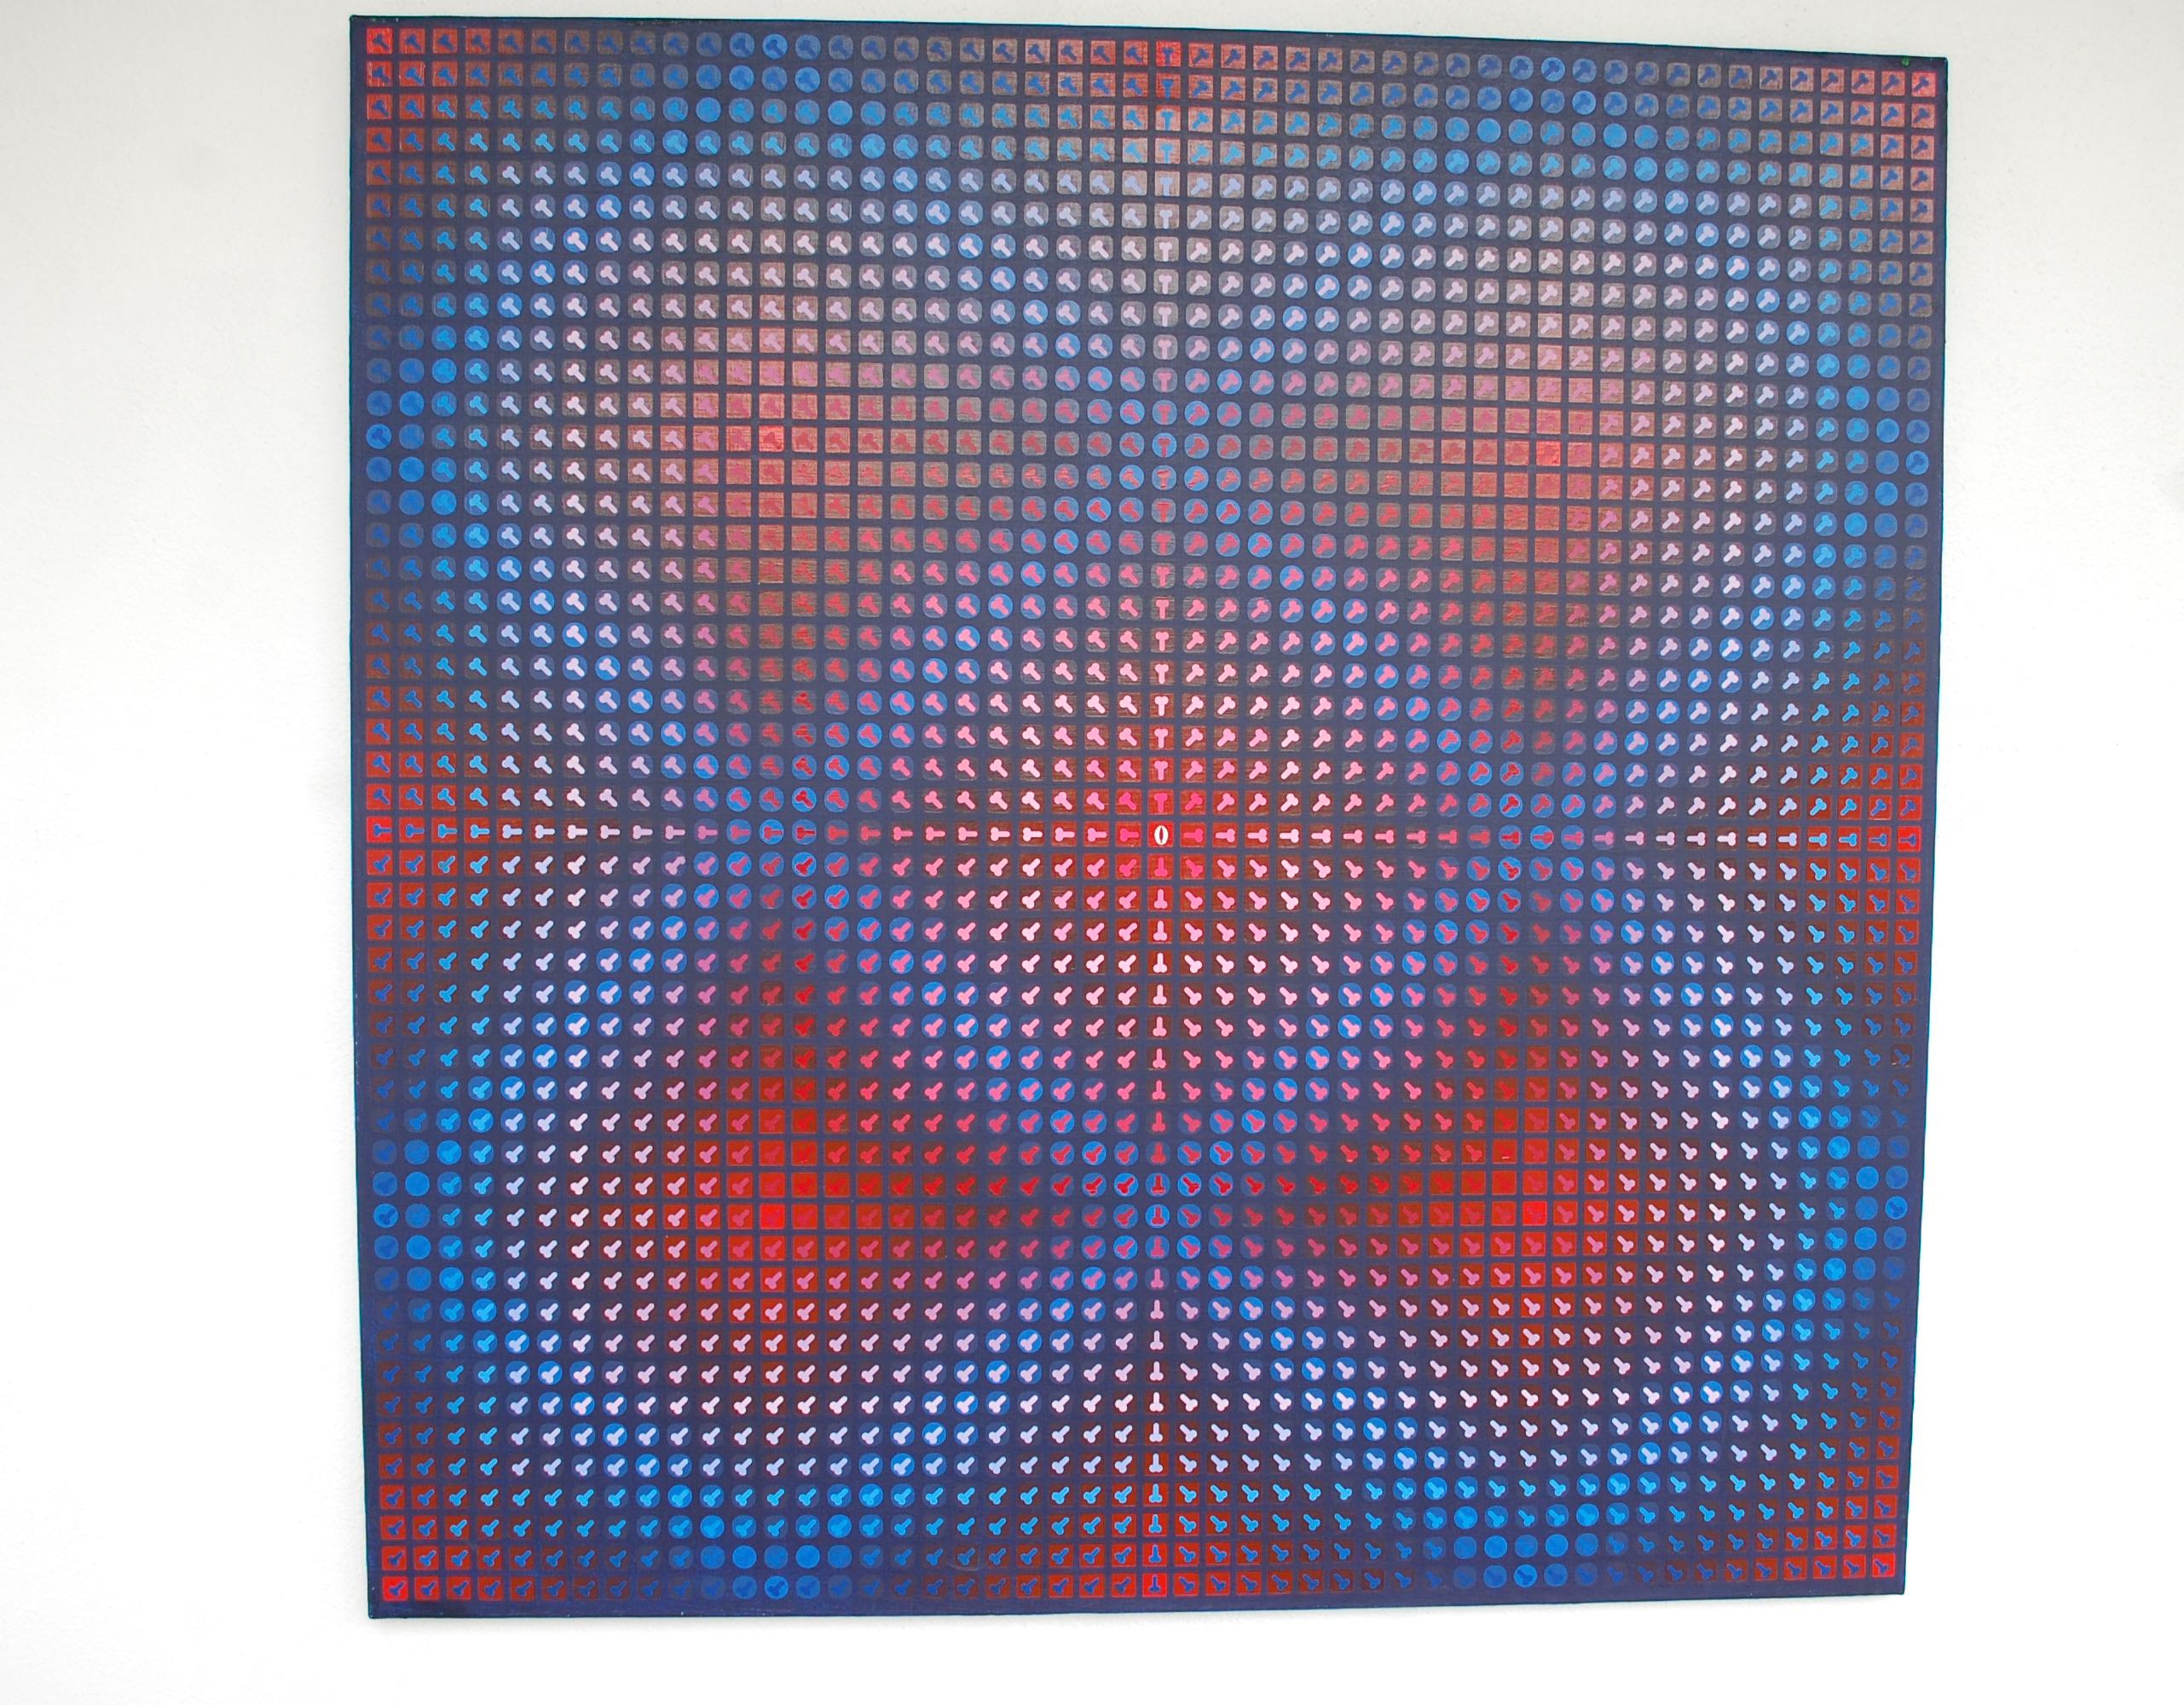 Blaue und rote Prinzessin Schneewittchen Op Art Acryl auf Leinwand. Größe 39x39x1
1999 erhielt der Künstler Pawel Wasowski sein Diplom und 2008 seine Doktorarbeit an der Fakultät für Architektur der Technischen Universität in Warschau, Polen.